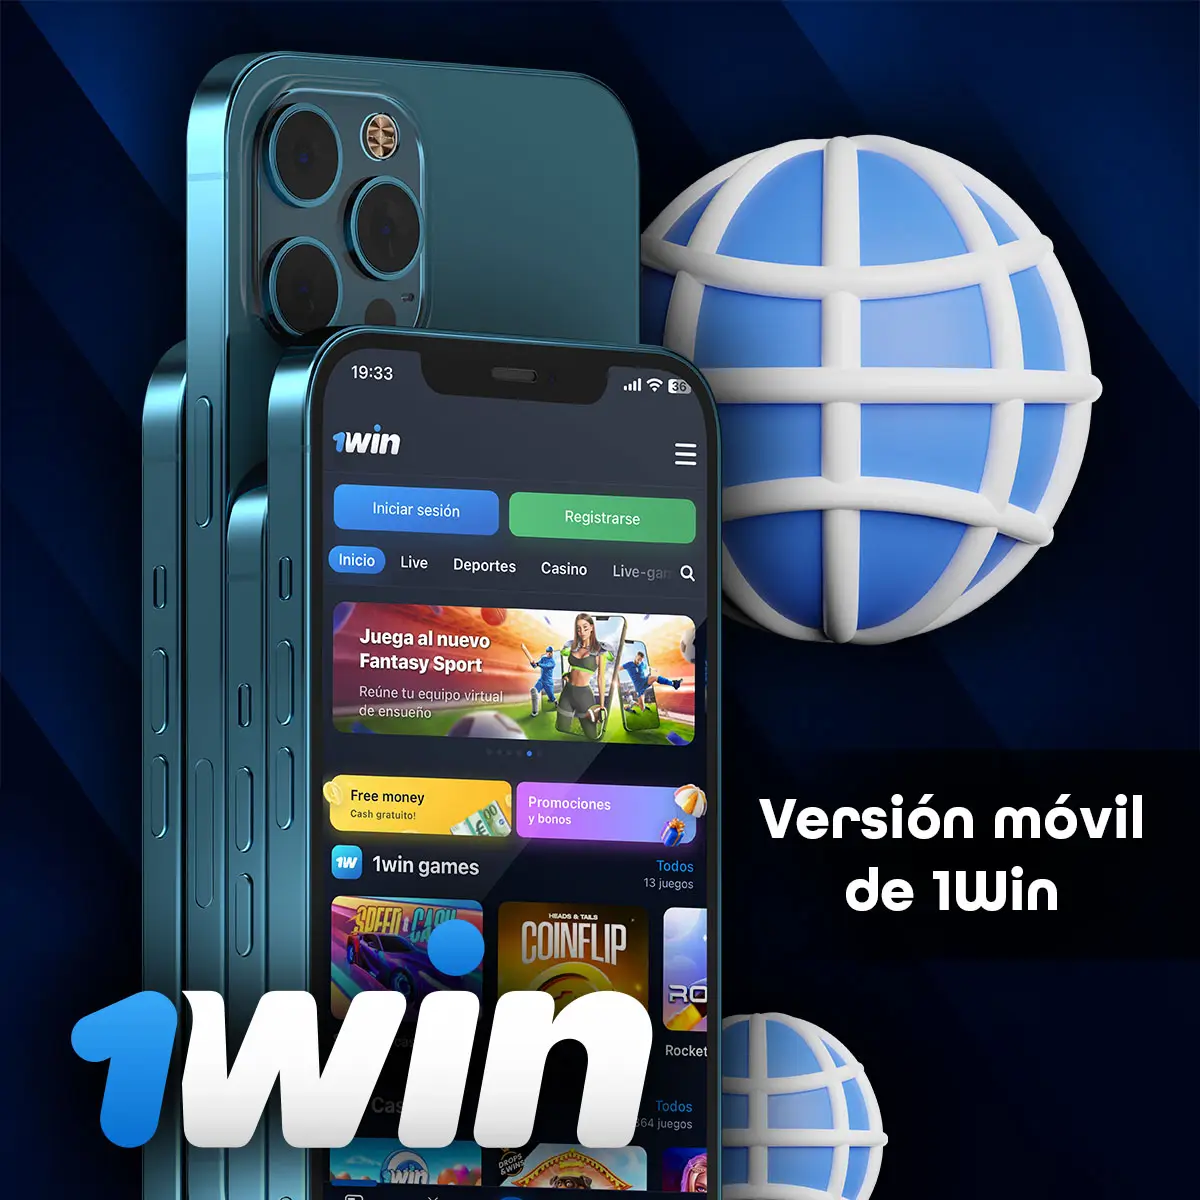 ¿Cuál es la diferencia entre la aplicación móvil de 1win y la versión móvil de 1win?